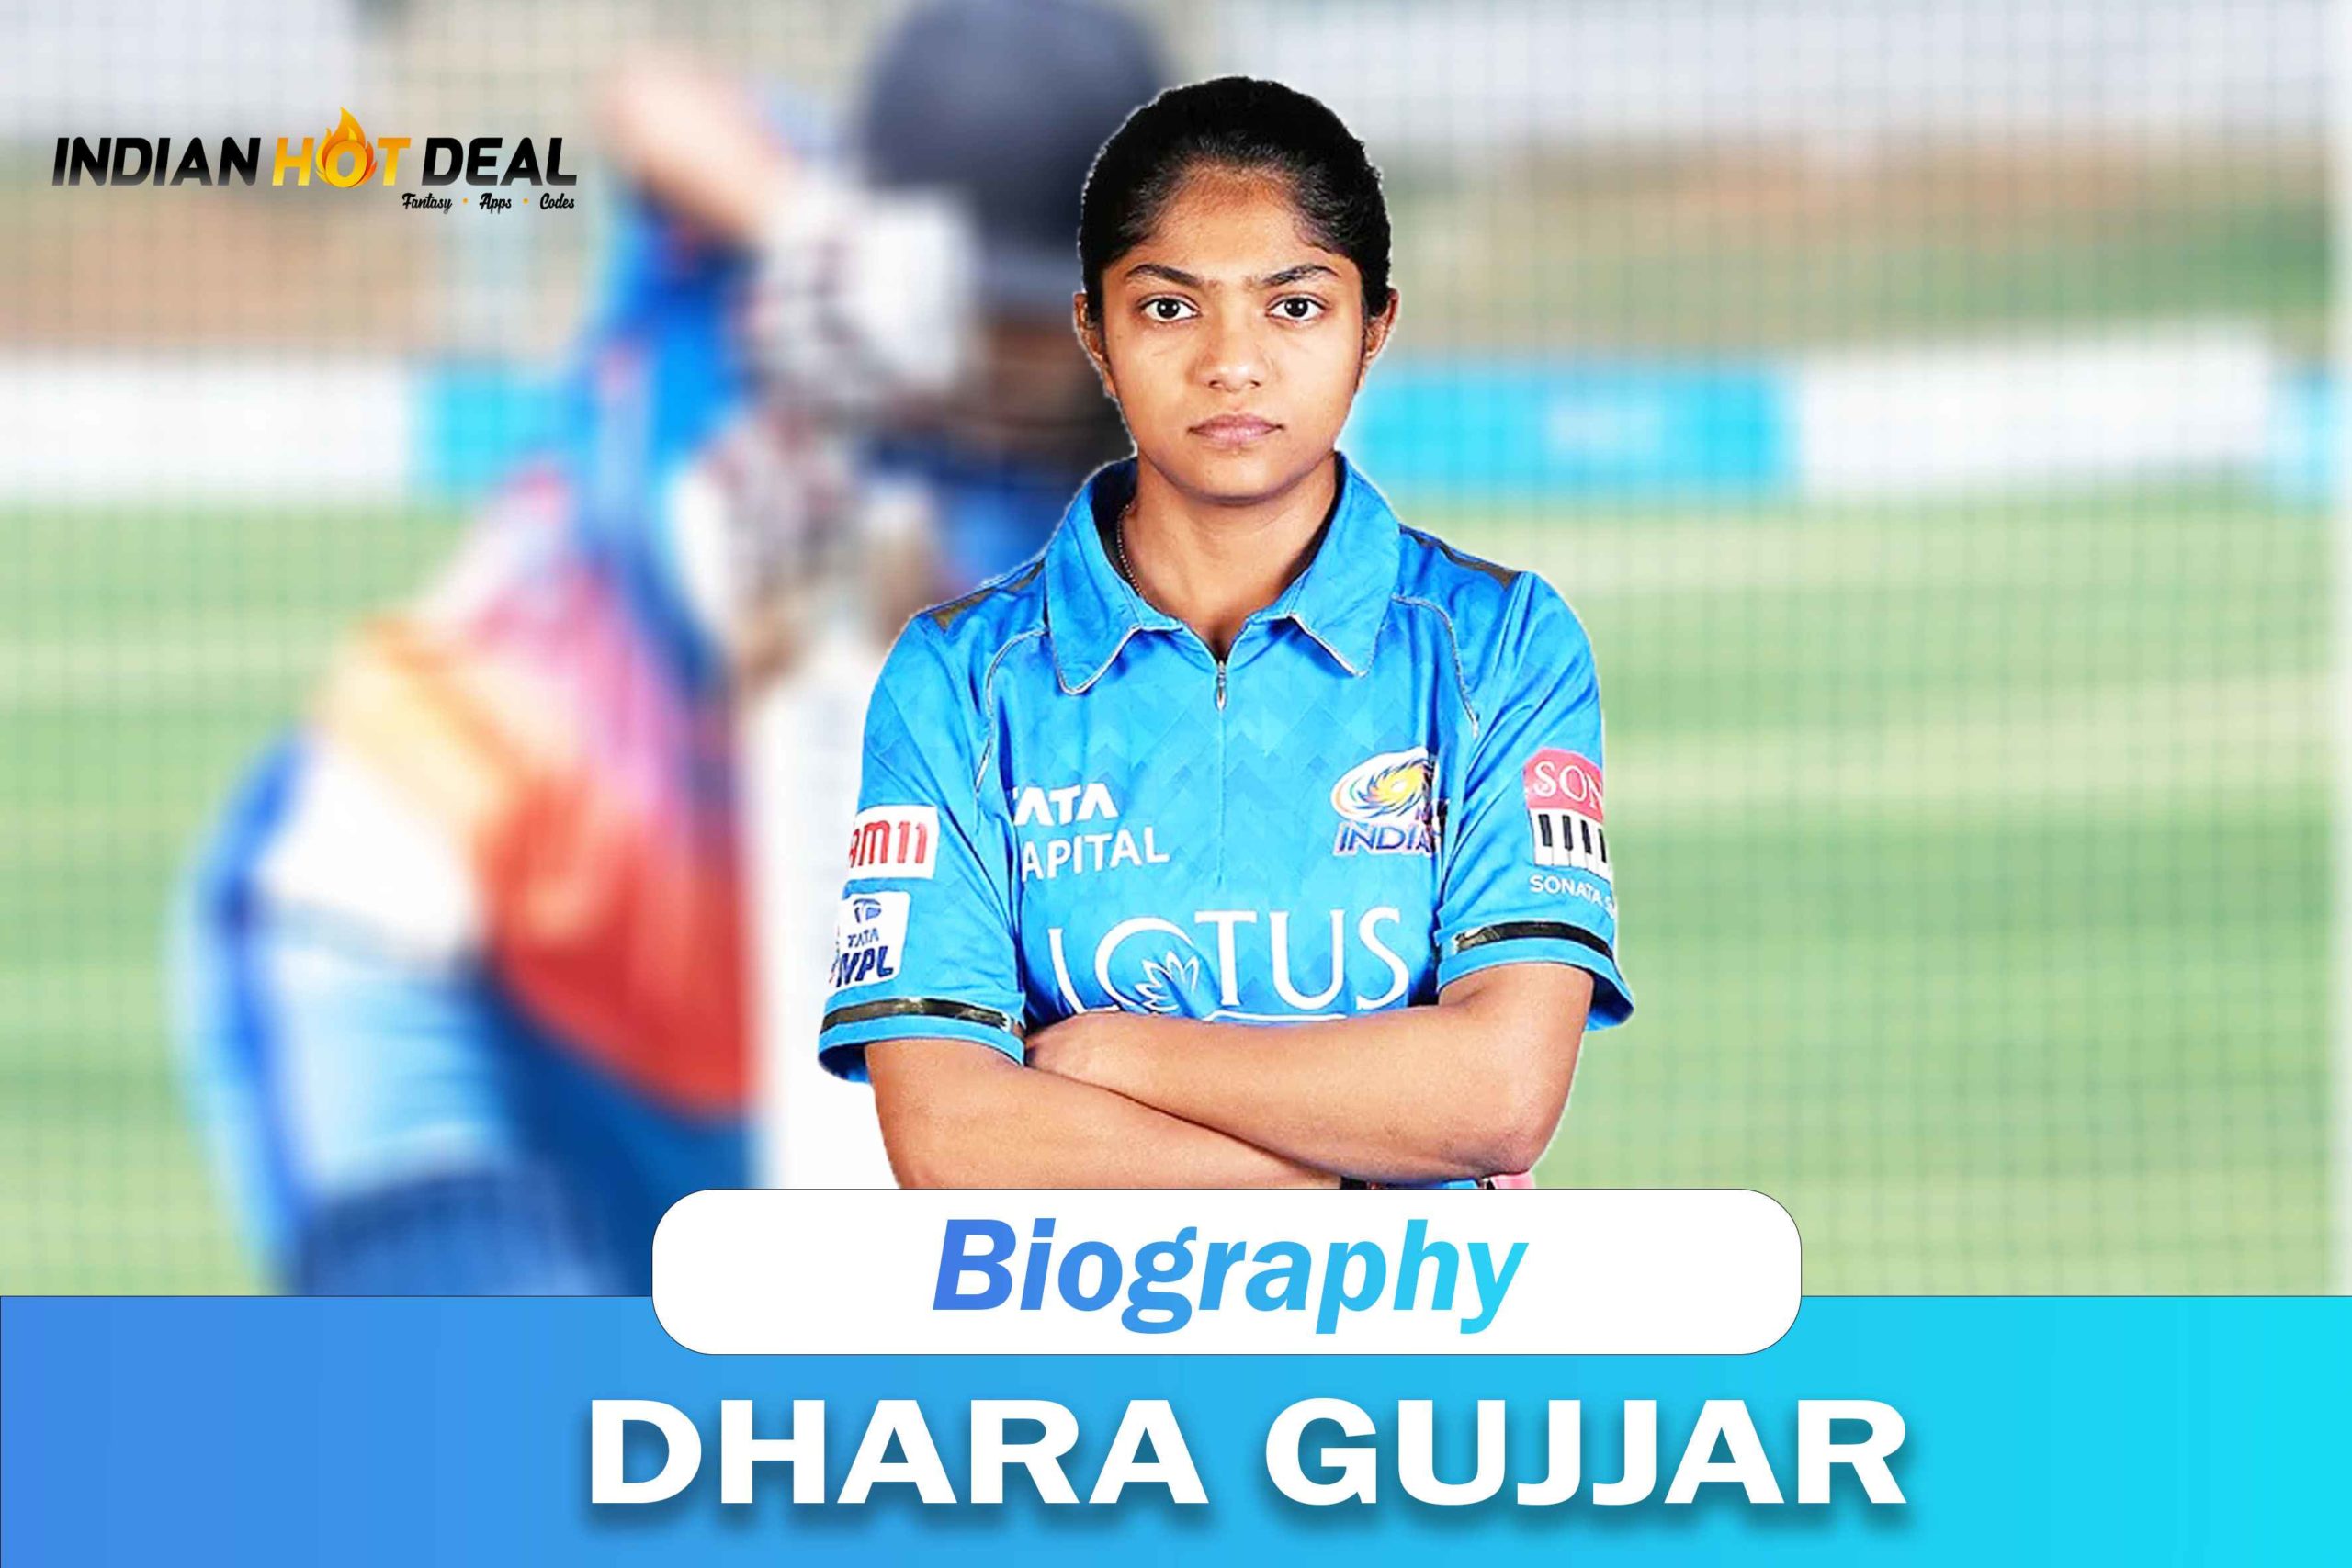 Dhara Gujjar Biography